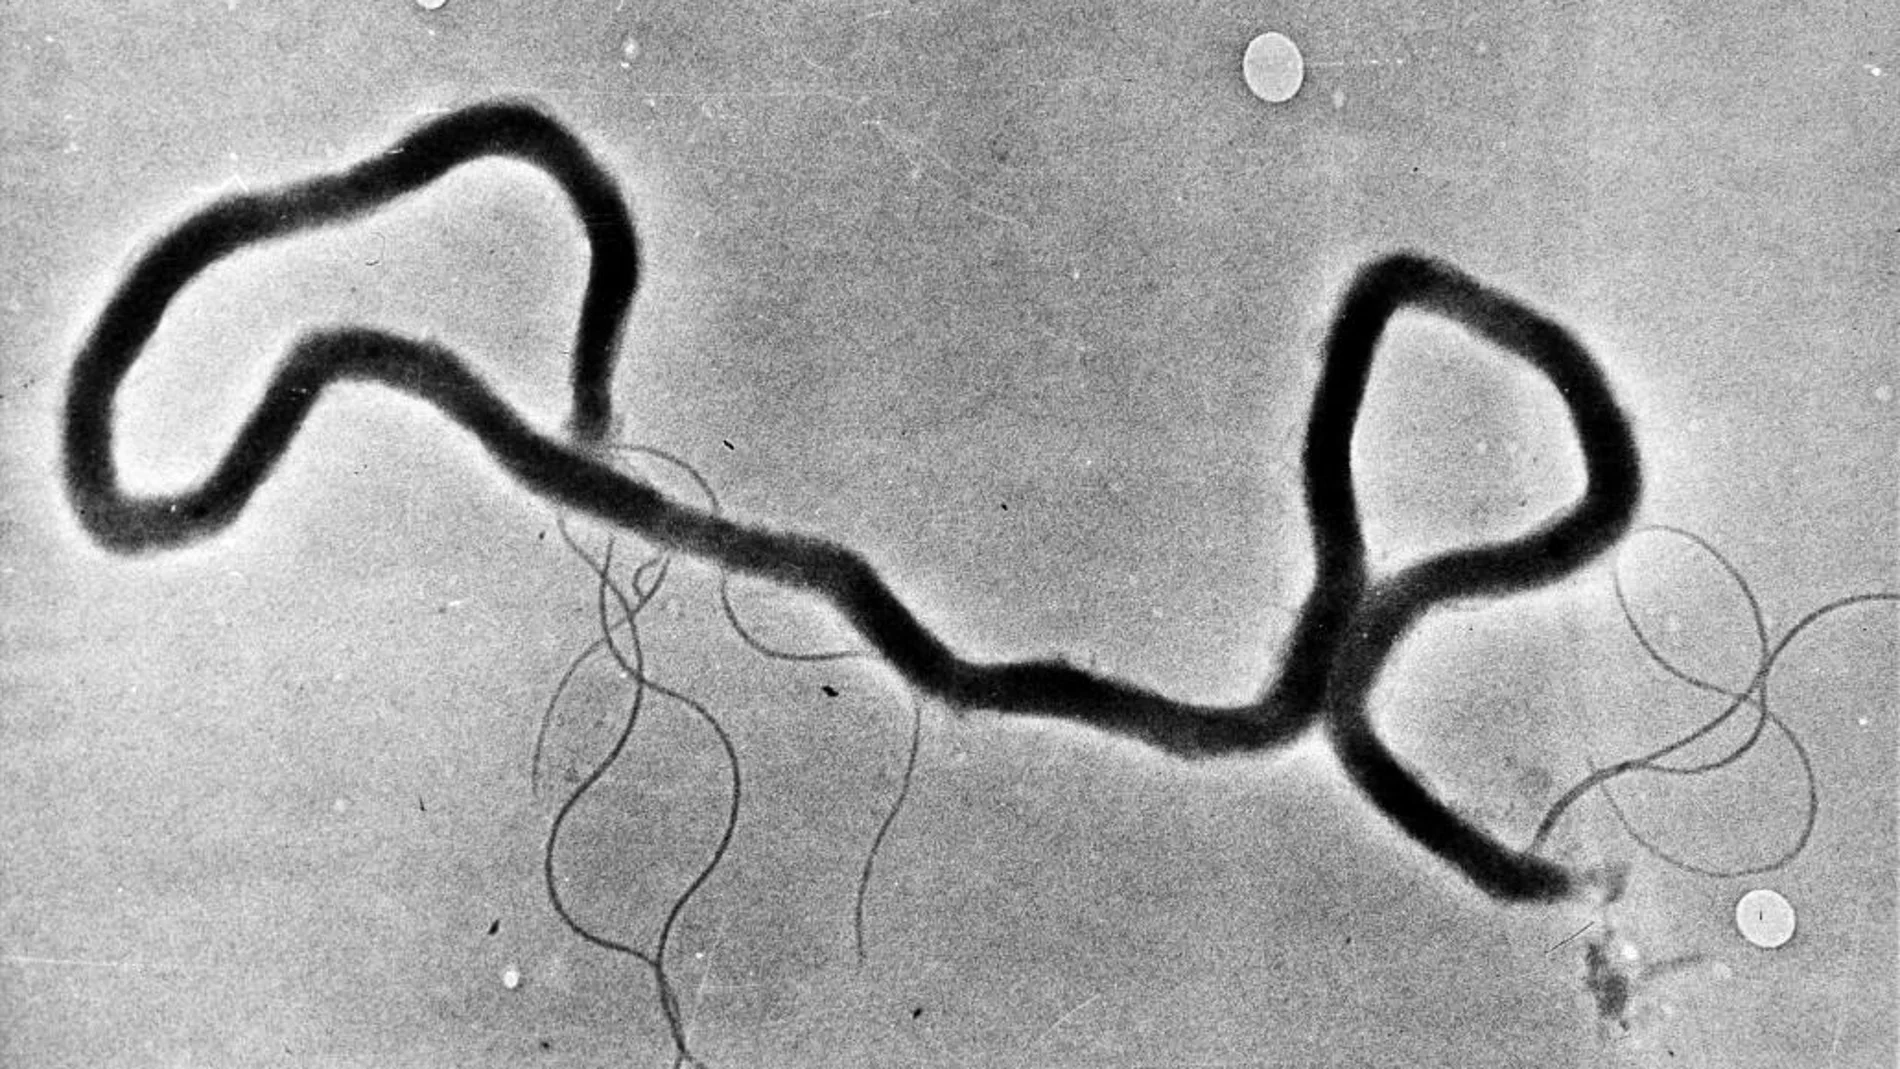 El treponema pallidum, causante de la sífilis